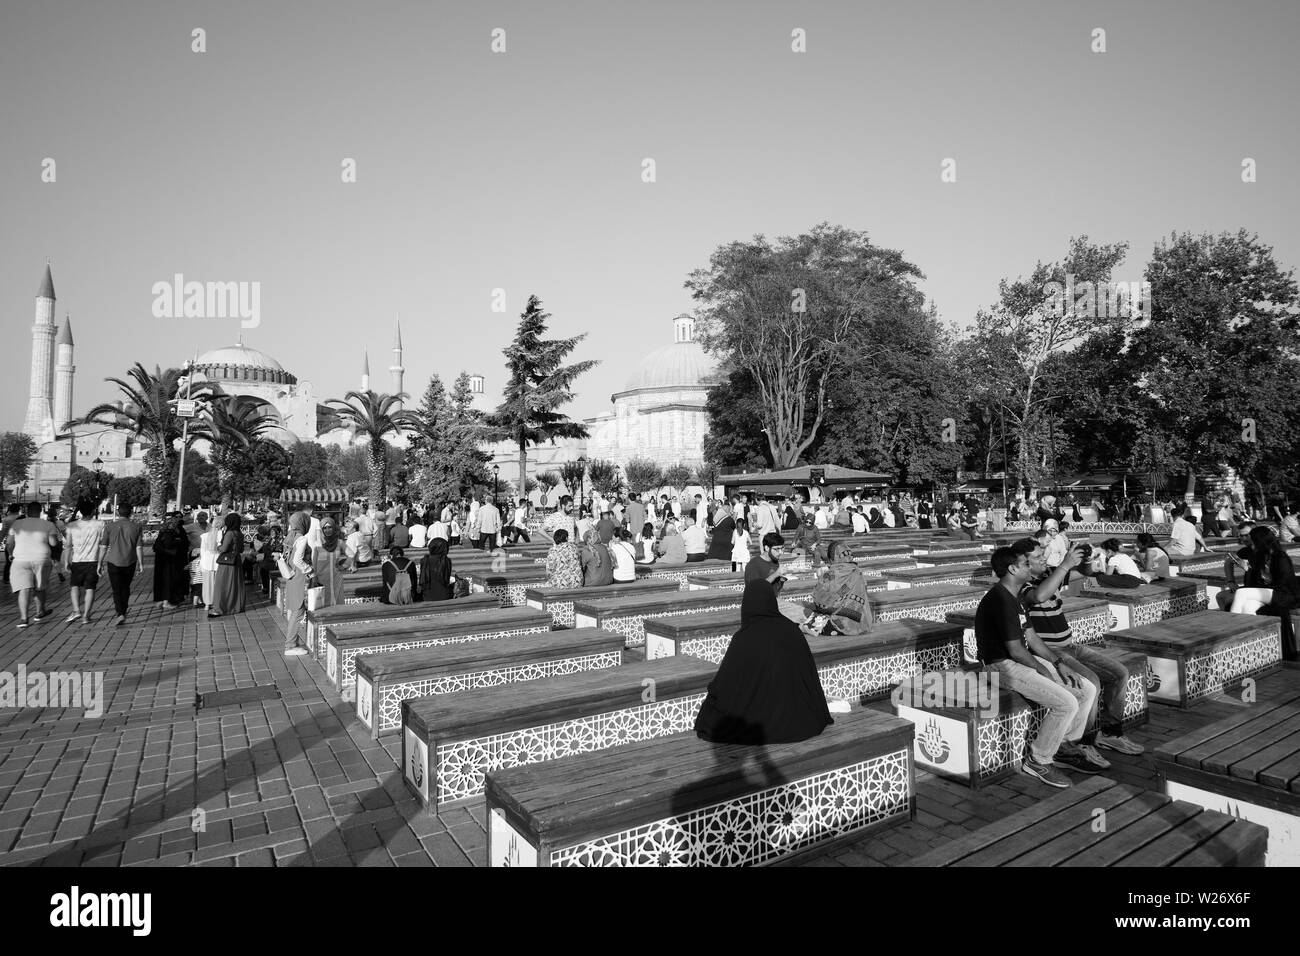 Istanbul, Türkei - 17. September 2017: externe Sicht auf die Hagia Sophia, ein Monument, das zunächst als eine Kirche, dann eine Moschee und heute ein Museum besucht von Mil geboren Stockfoto